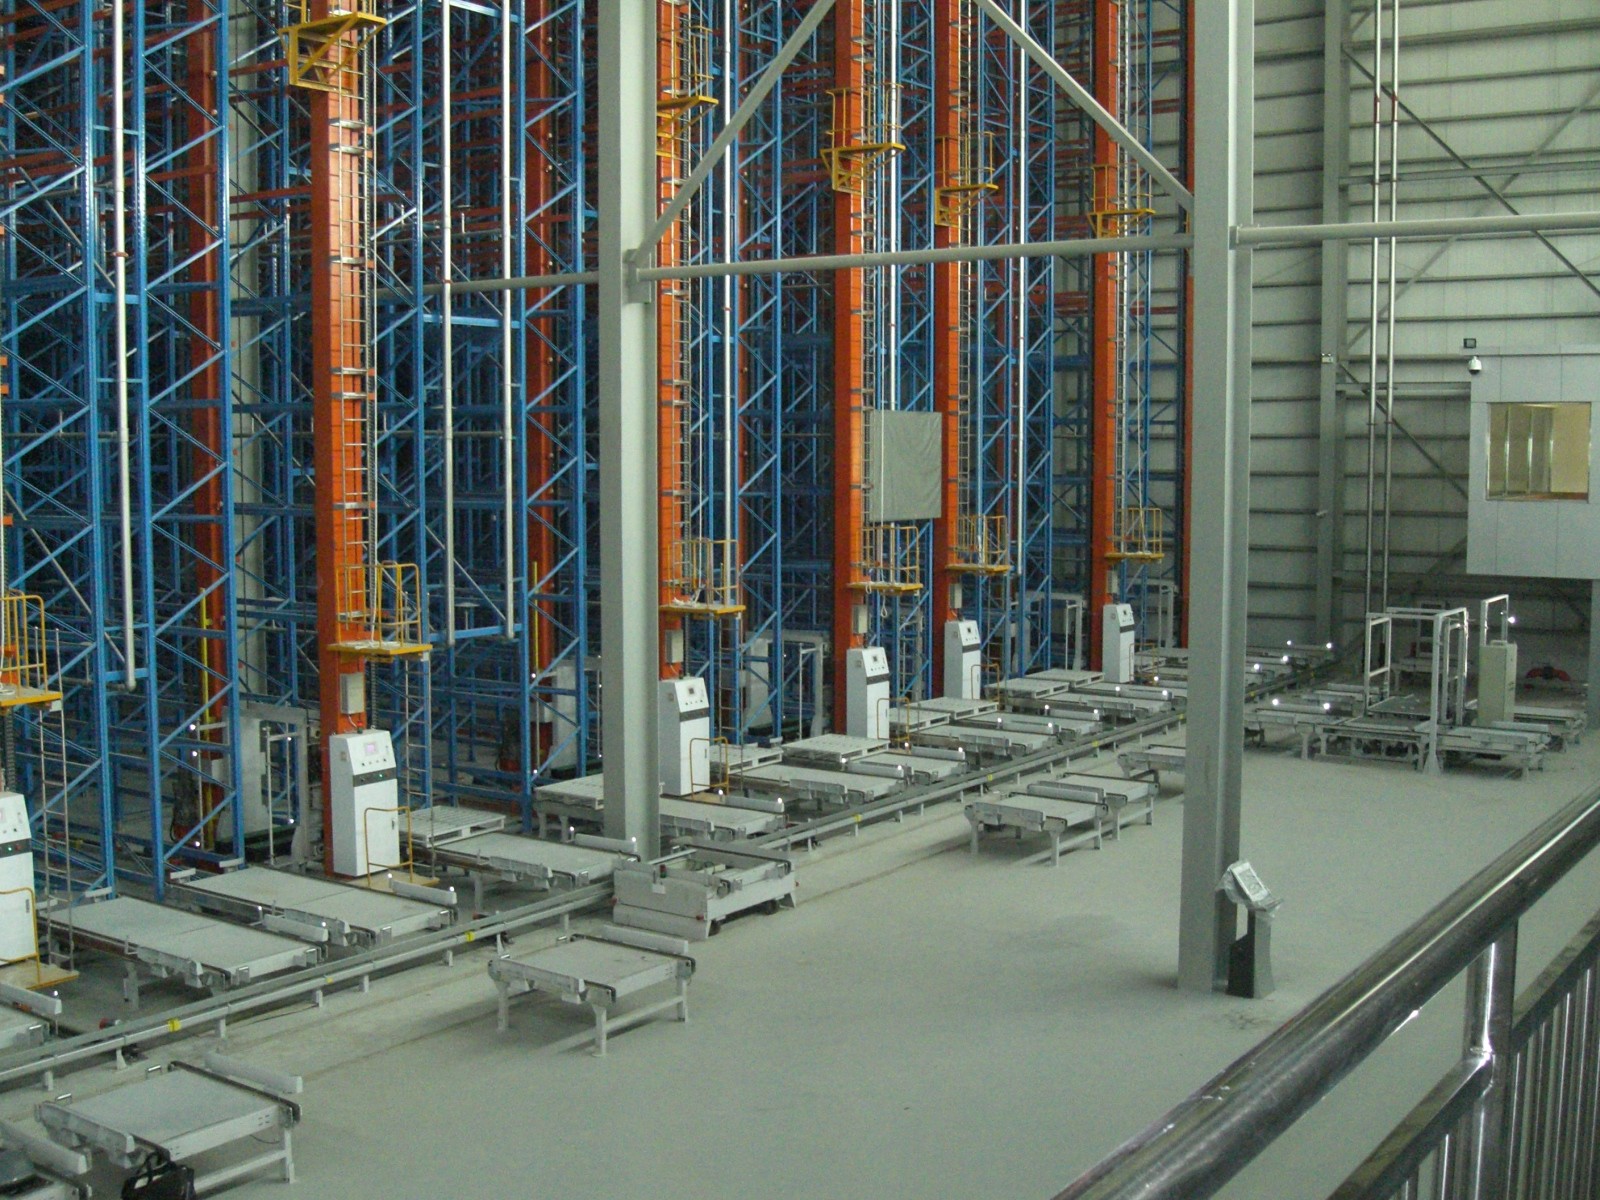 Plataforma resistente de Warehouse que atormenta la echada de 50.8m m con 10 años de garantía